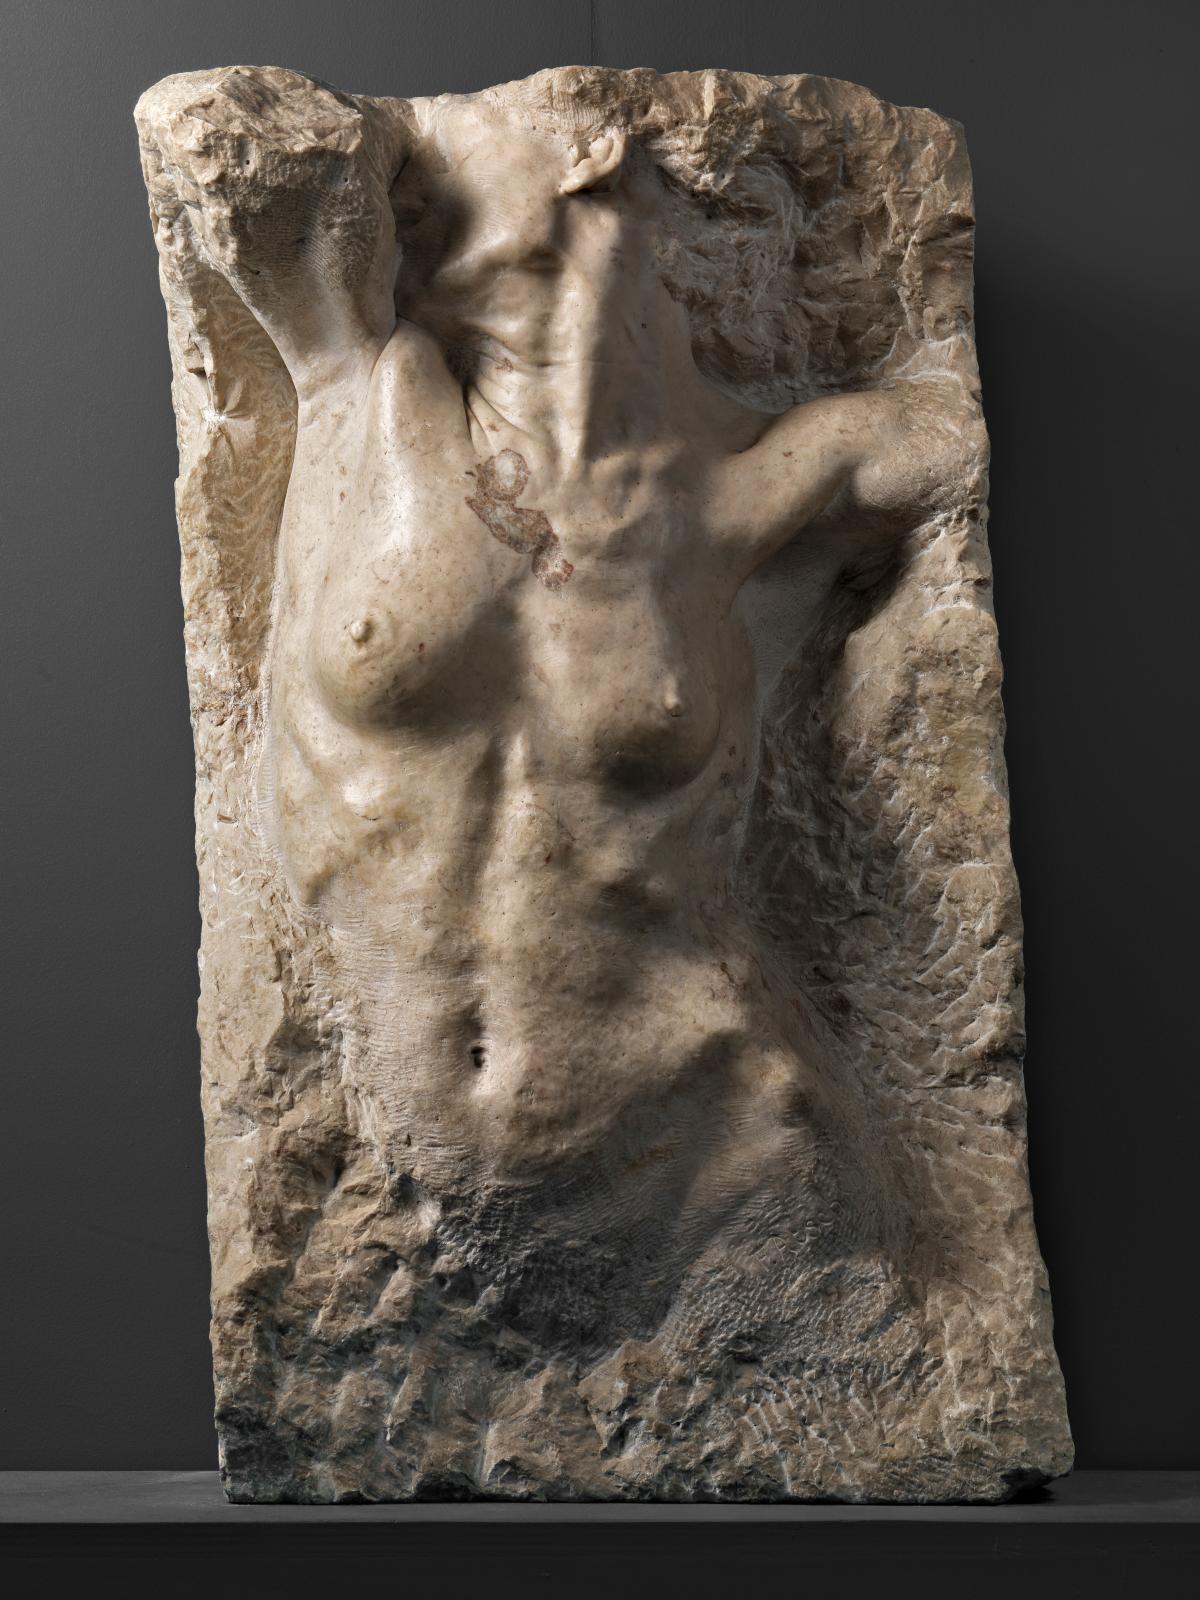 Franco Asco (1903-1970), Nu féminin, 1927, marbre, 103 x 58 x 30 cm. Photo courtesy Arrigo Coppitz